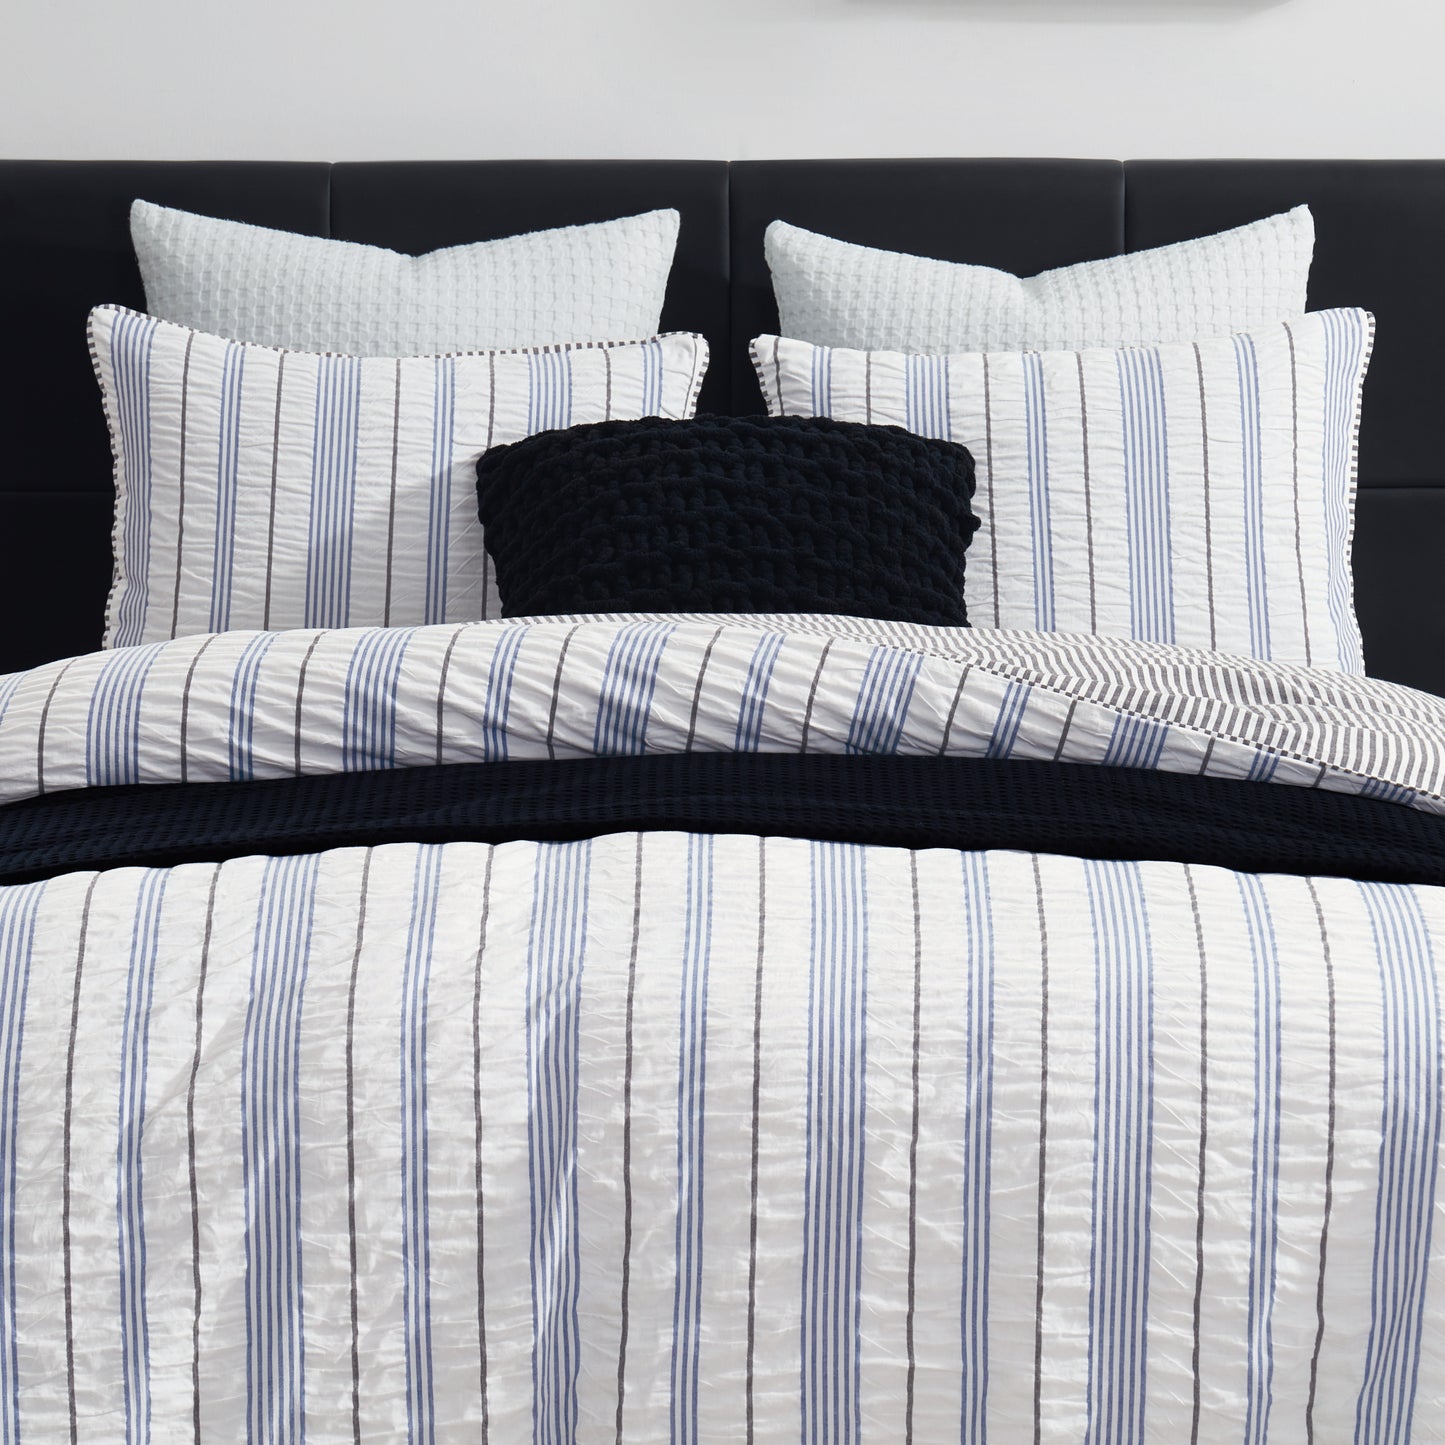 DKNY Seersucker Stripe Comforter Collection Set